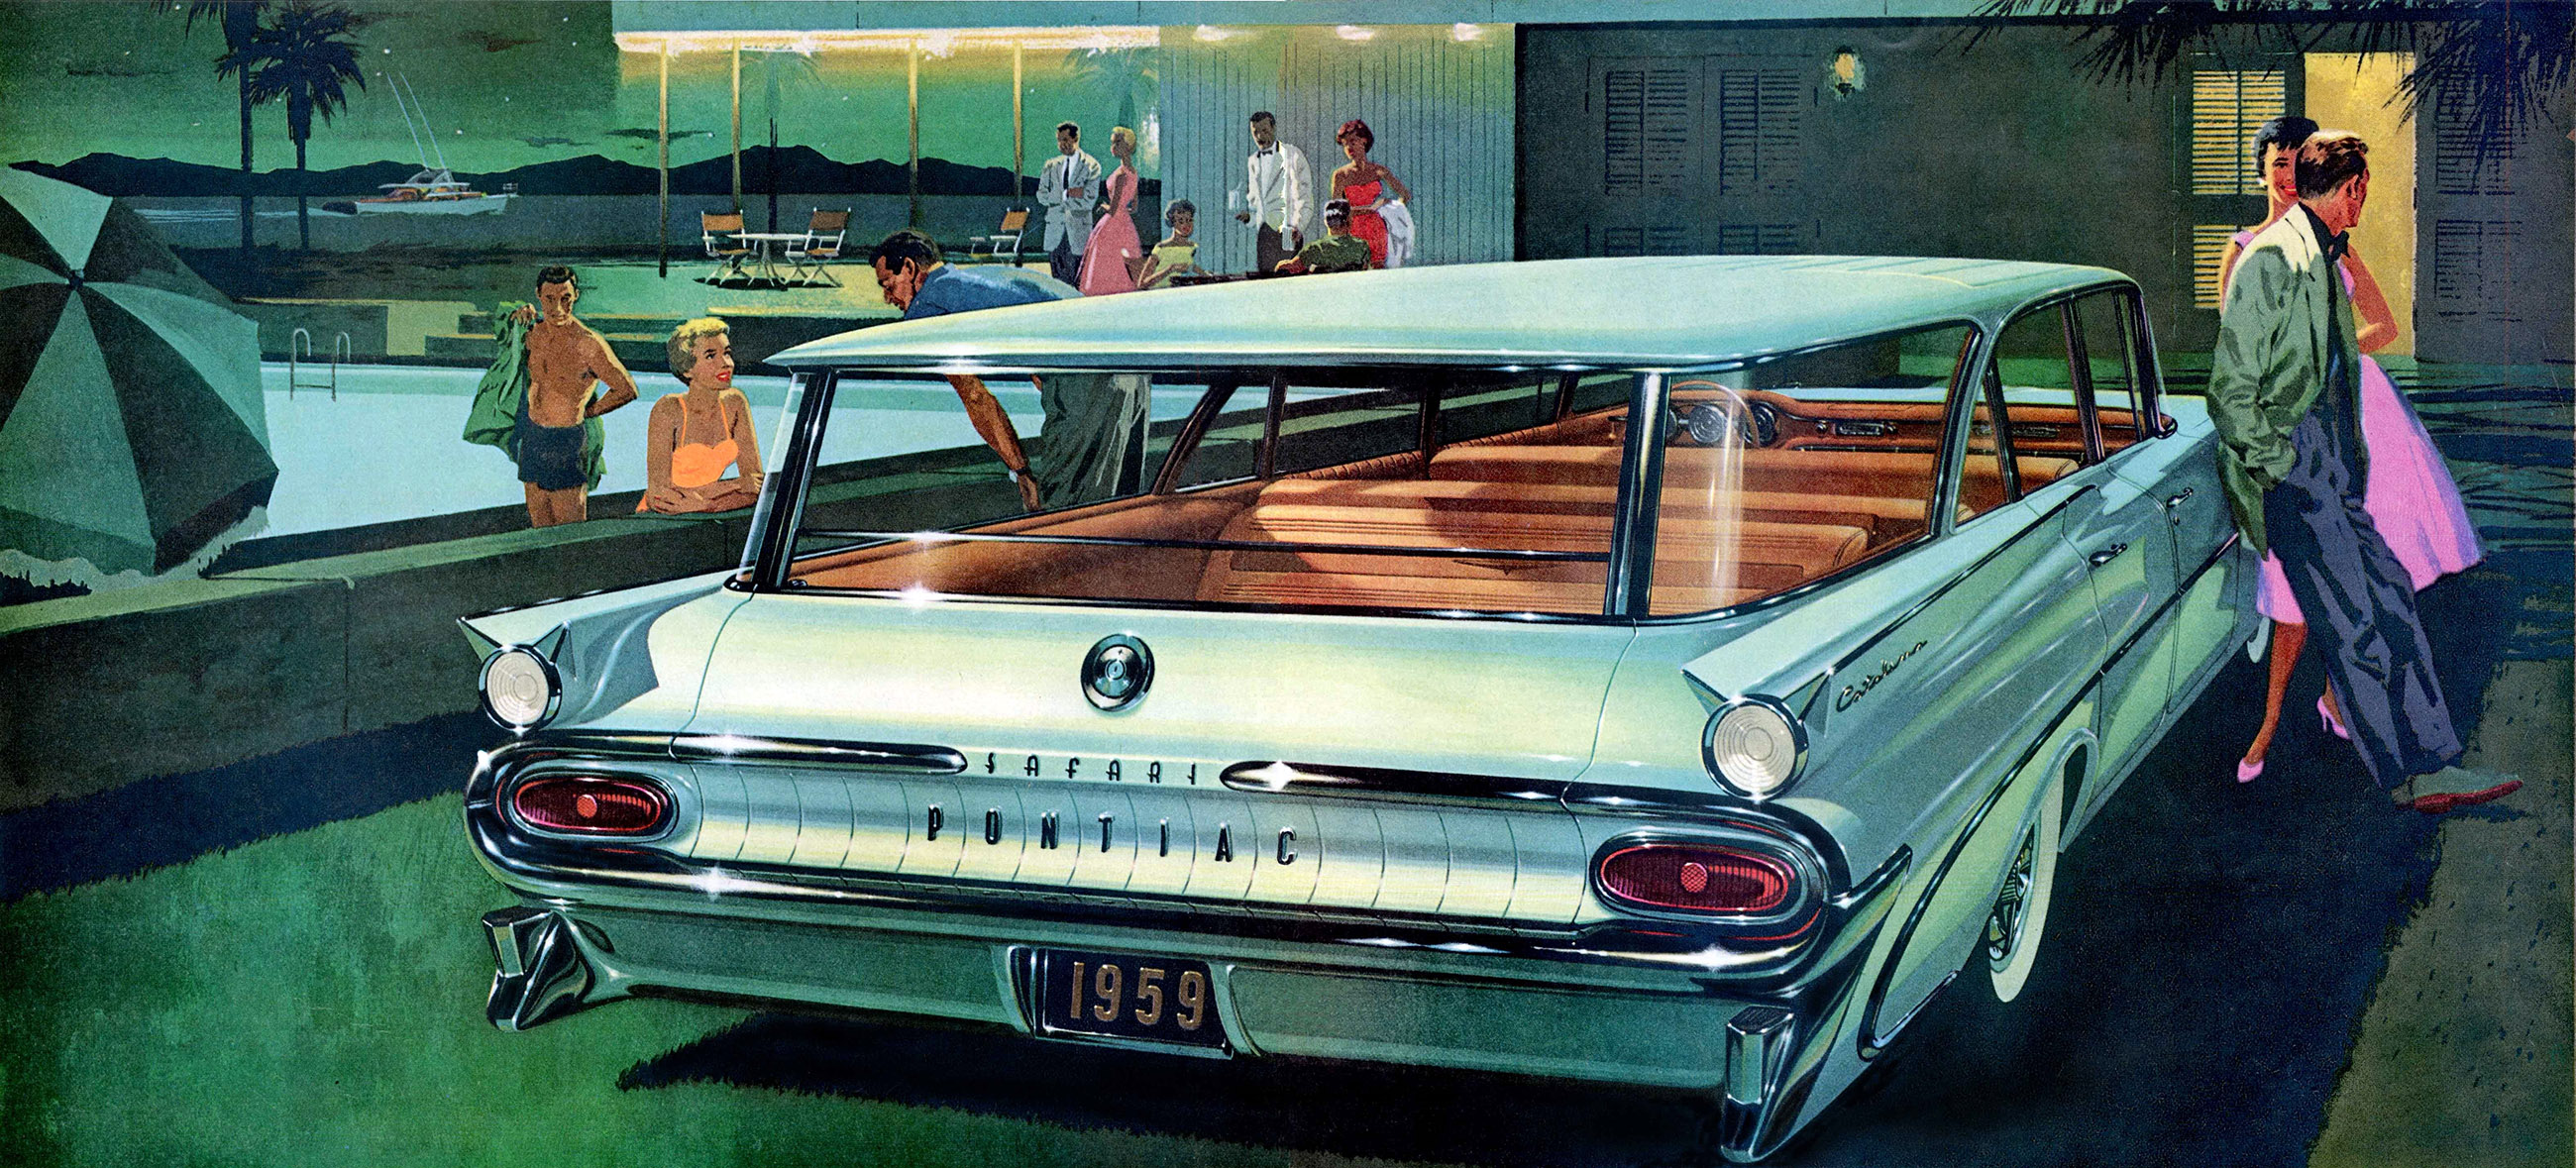 1959 Pontiac Catalina Safari: Art Fitzpatrick and Van Kaufman